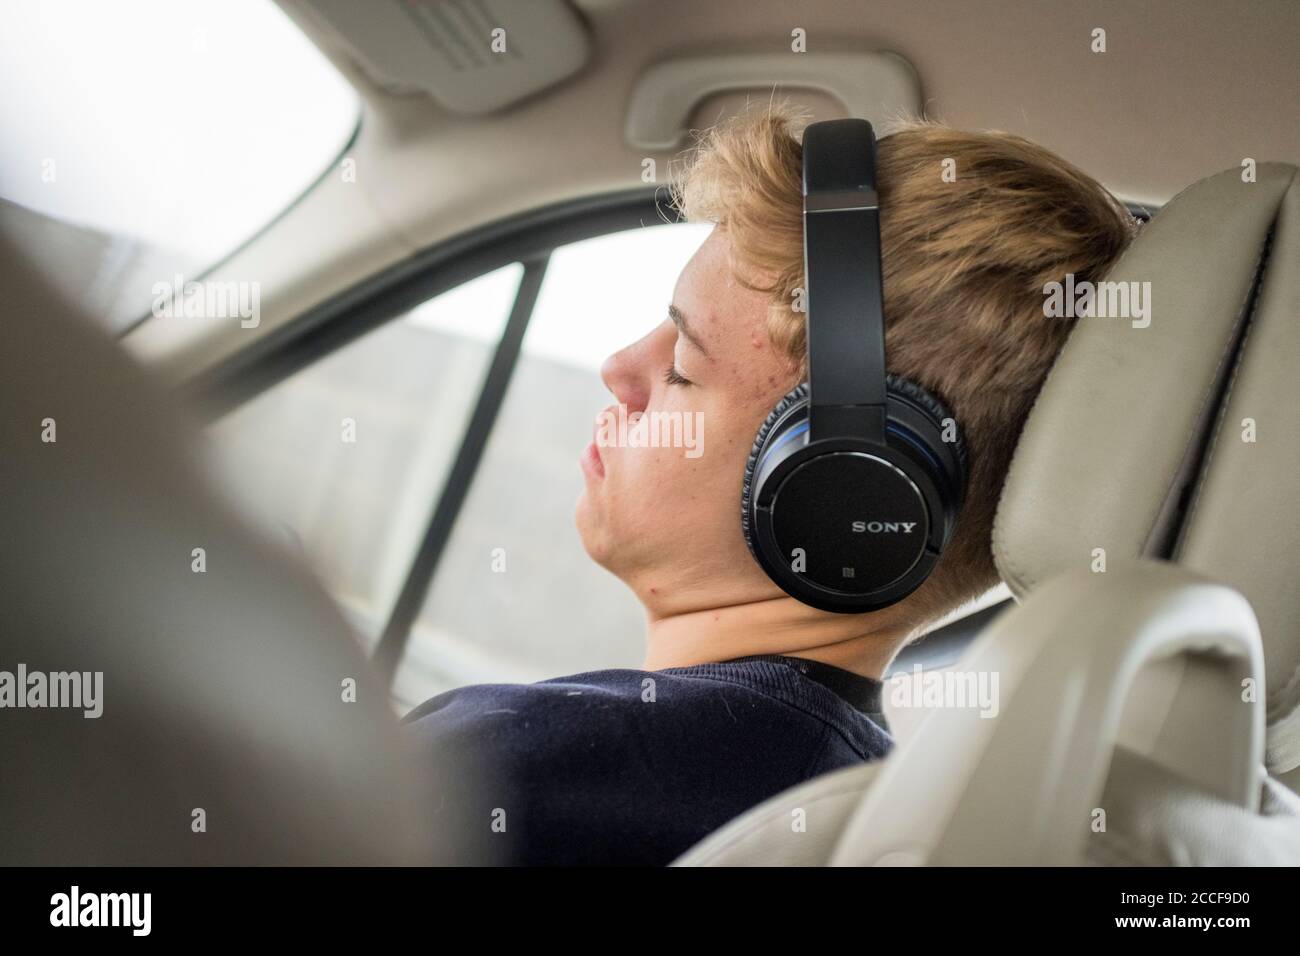 Garçon (16 ans) avec casque dans une voiture Banque D'Images